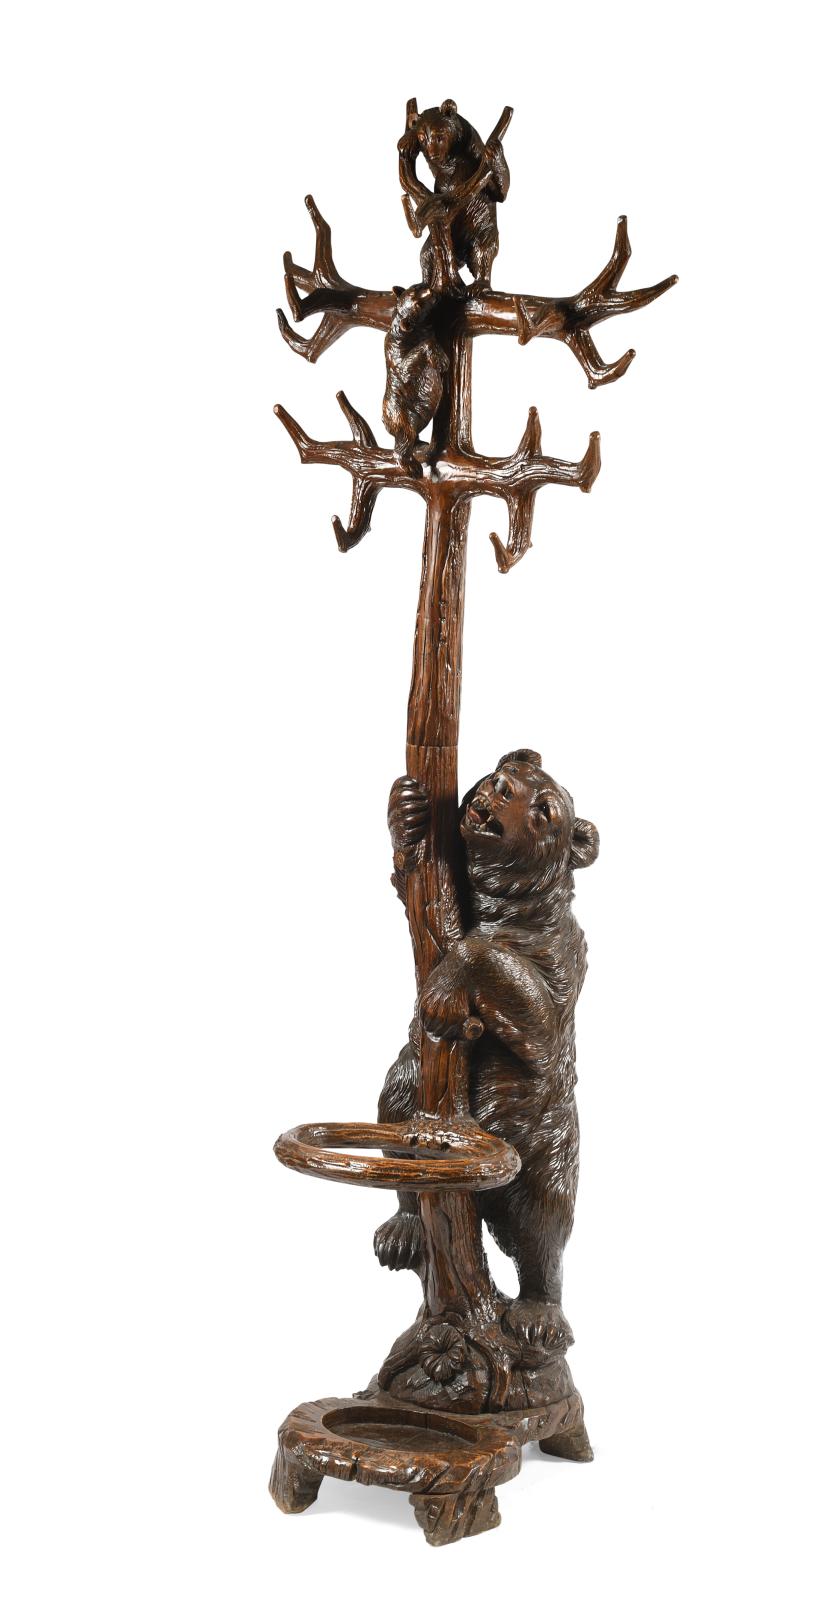 Ours debout en bois sculpté et patiné formant portemanteau et porte-parapluie, tenant une branche sur laquelle deux oursons grimpent, les 